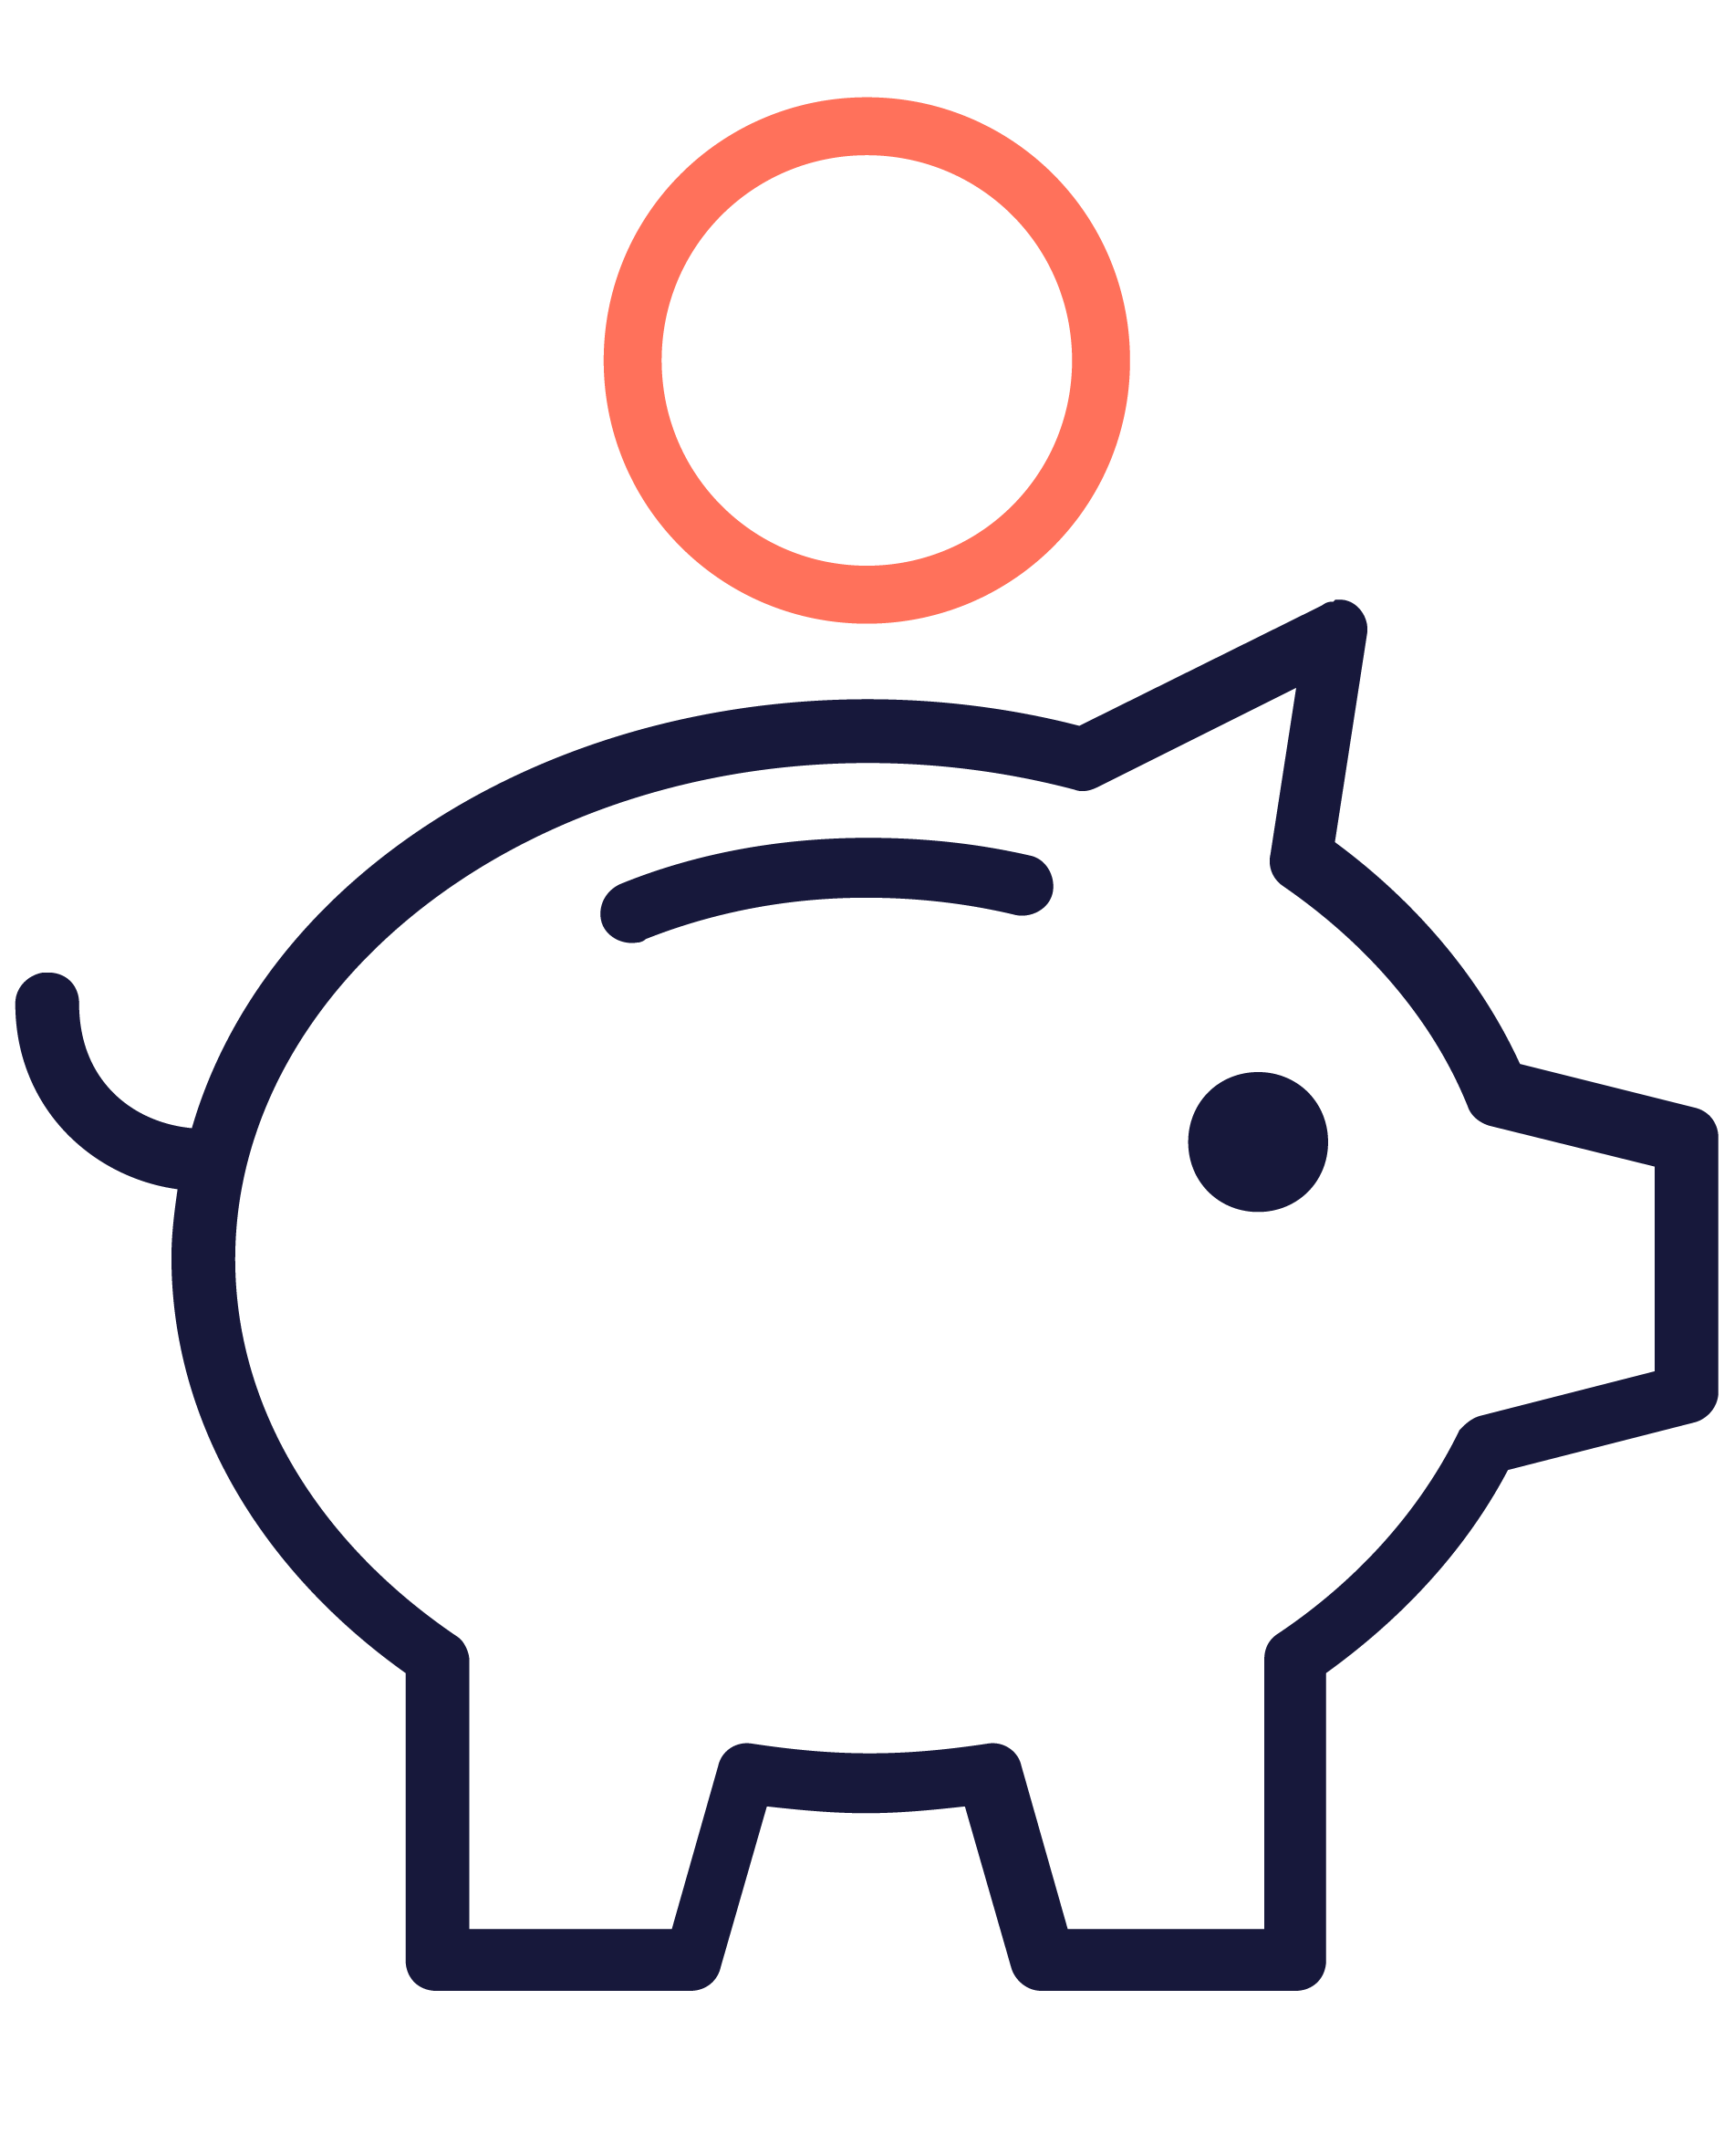 noun_Piggy Bank_980052-01